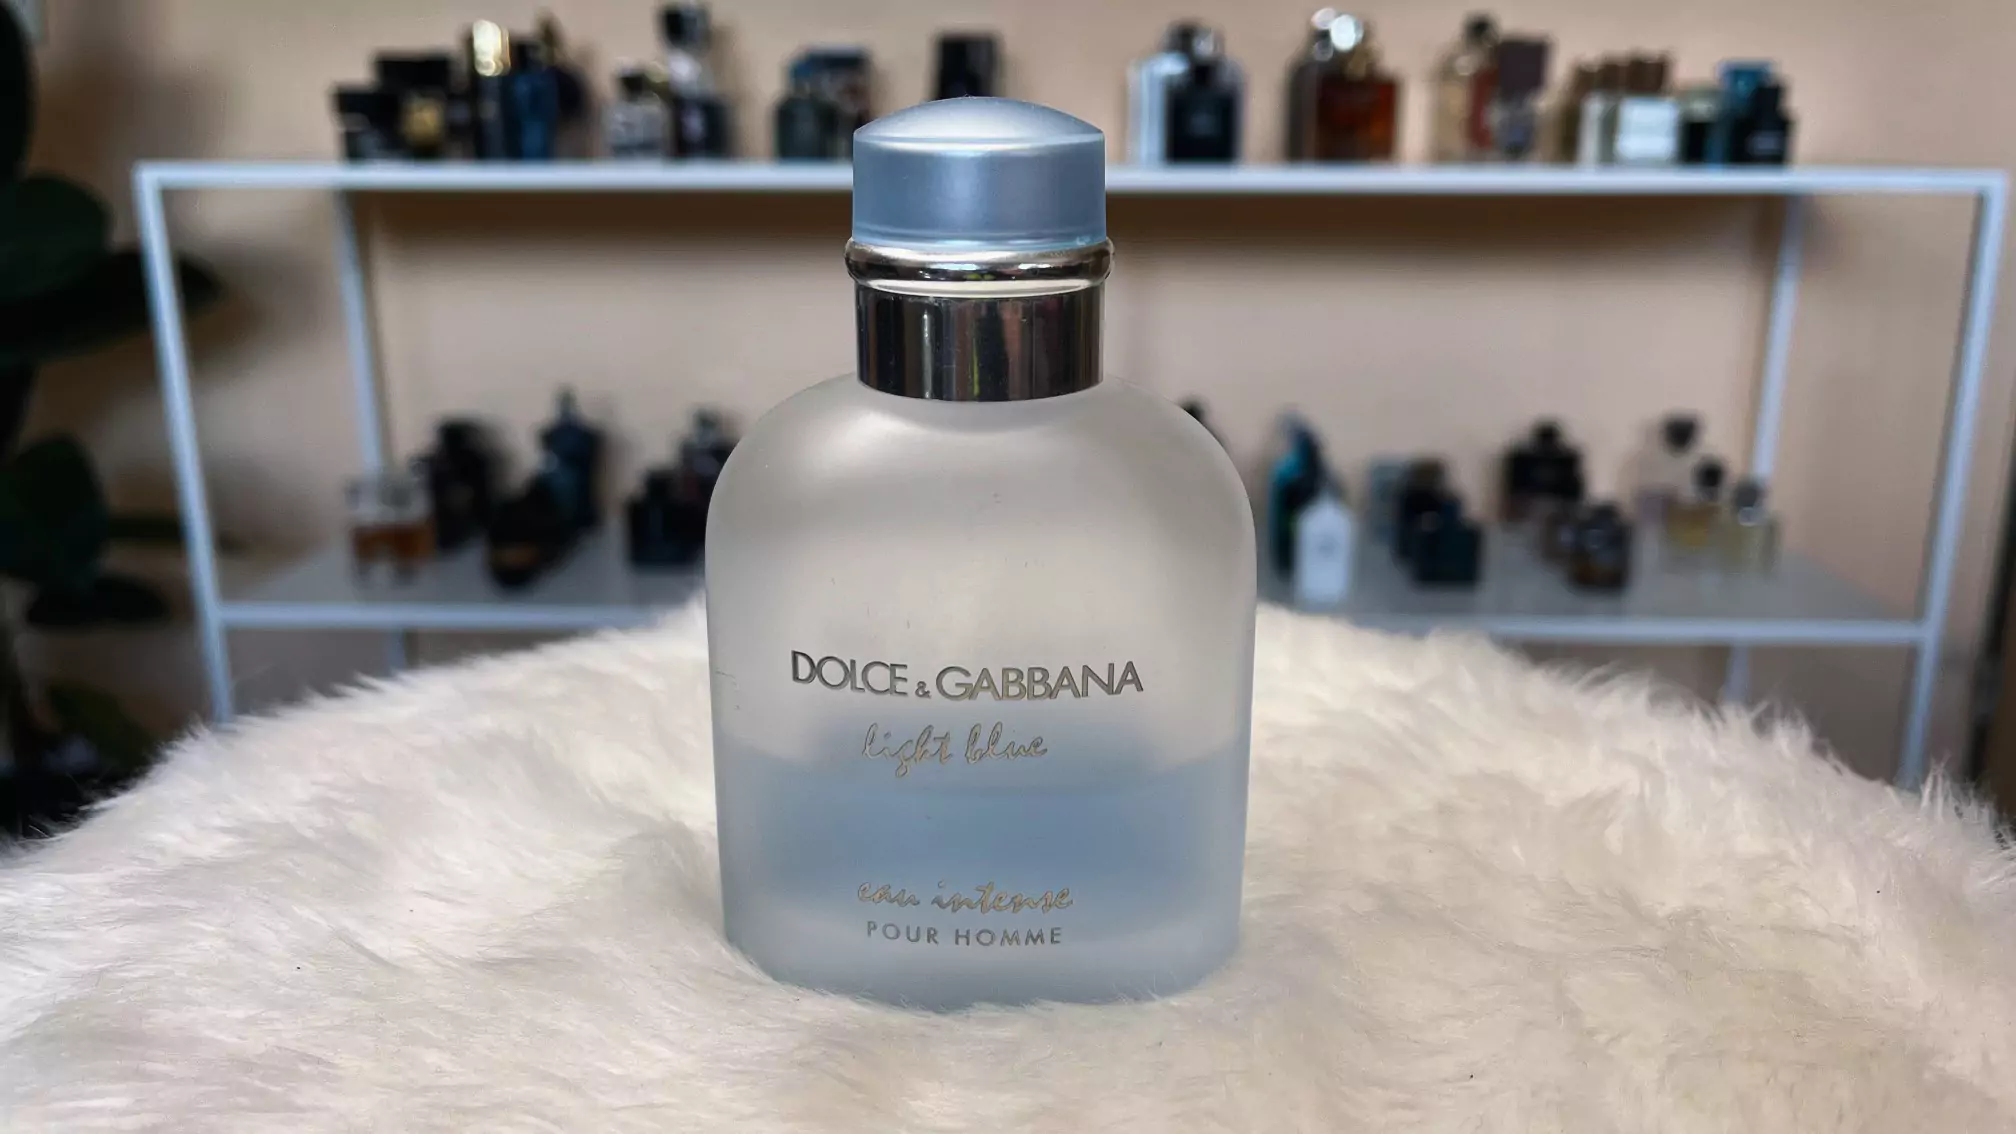 Light Blue Eau Intense (Dolce & Gabbana)